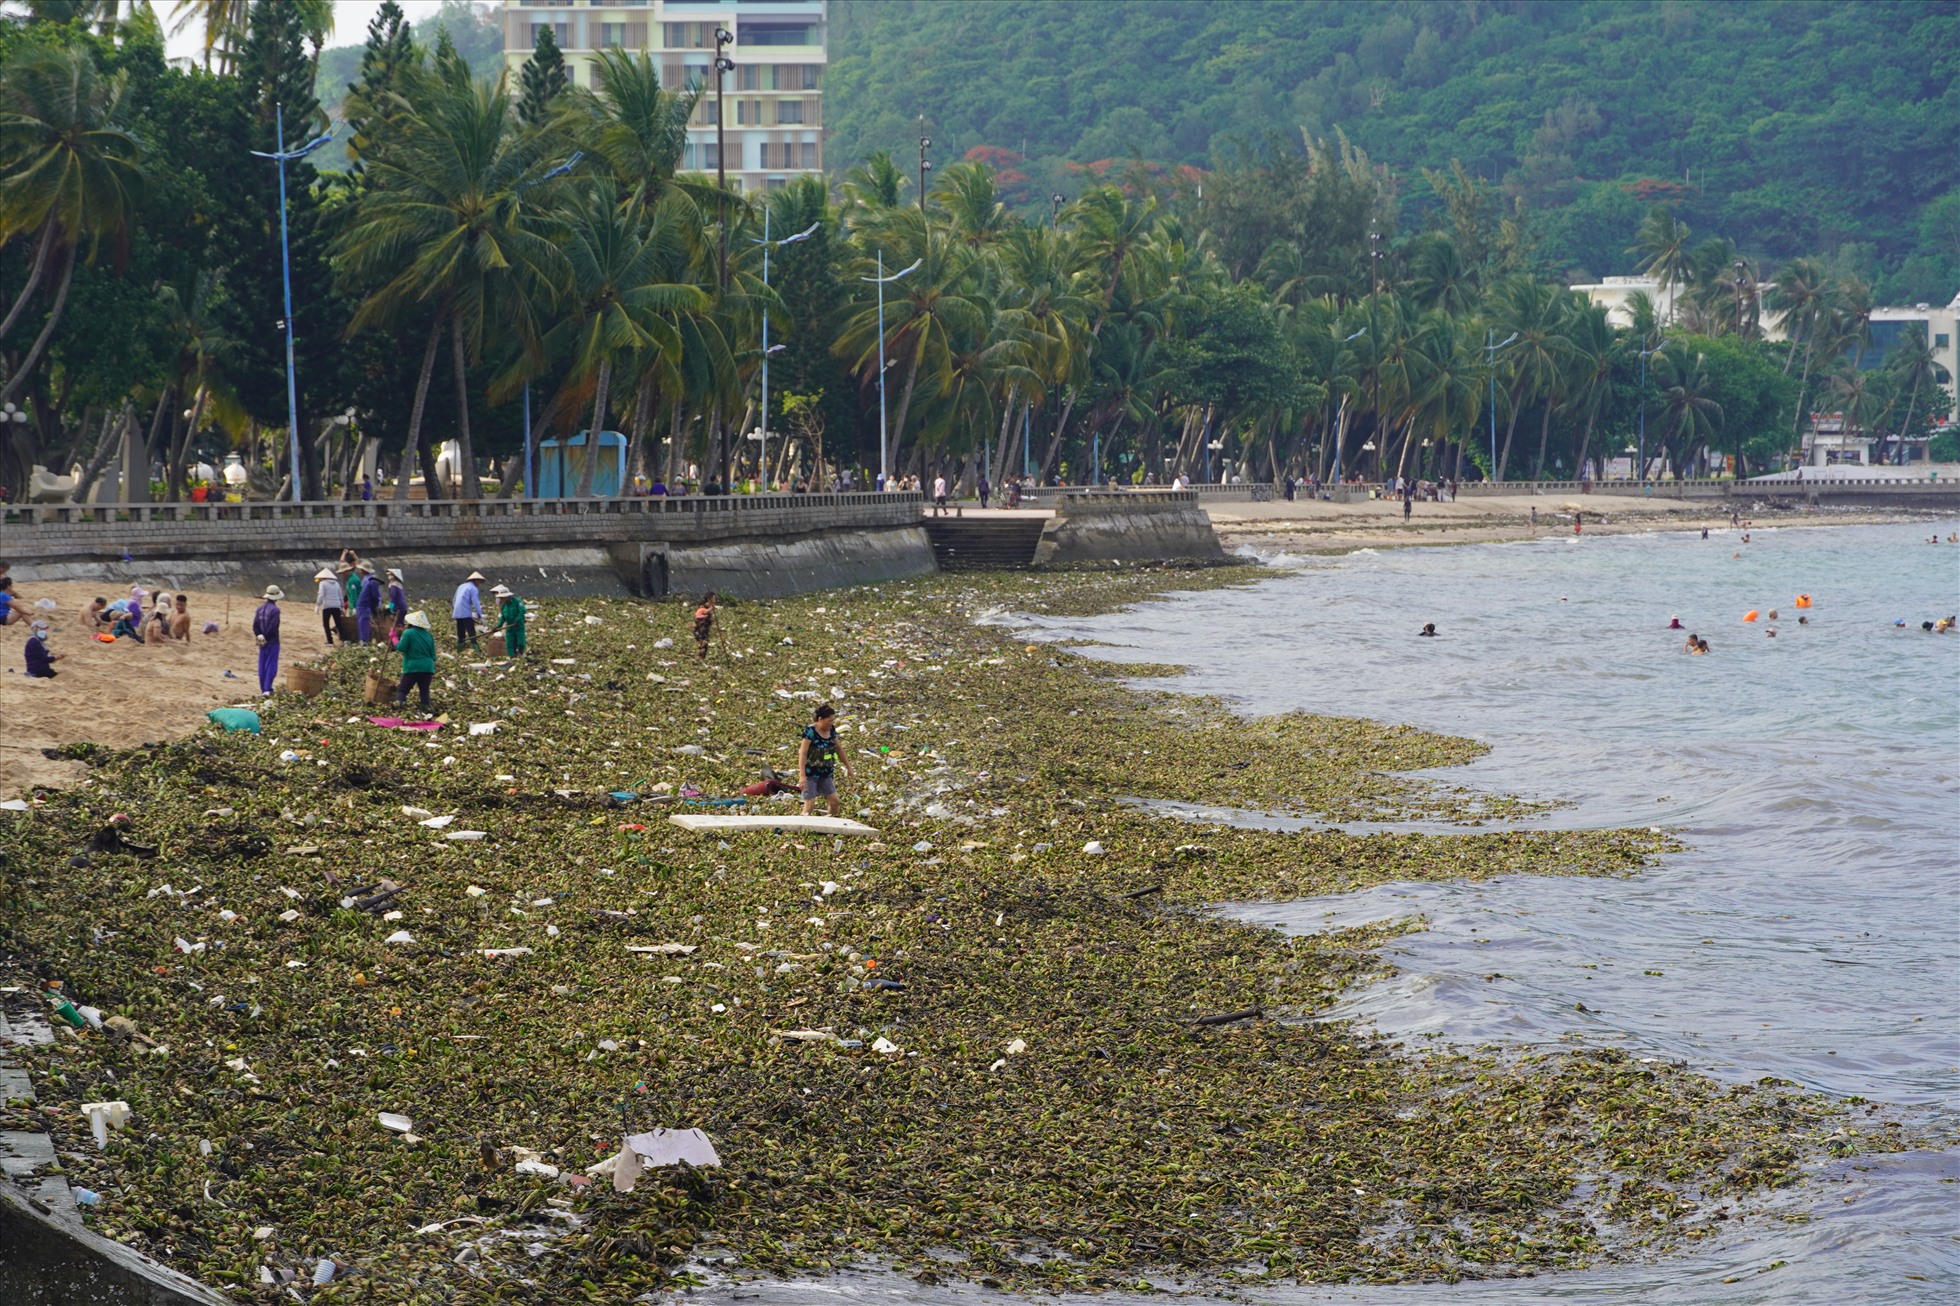 Từ 15.6, lượng lớn rác từ biển đã tấp vào bờ tại các bãi tắm trên địa bàn TP Vũng Tàu,   làm ảnh hưởng người dân, du khách tắm biển tại địa phương. Ảnh: Thành An